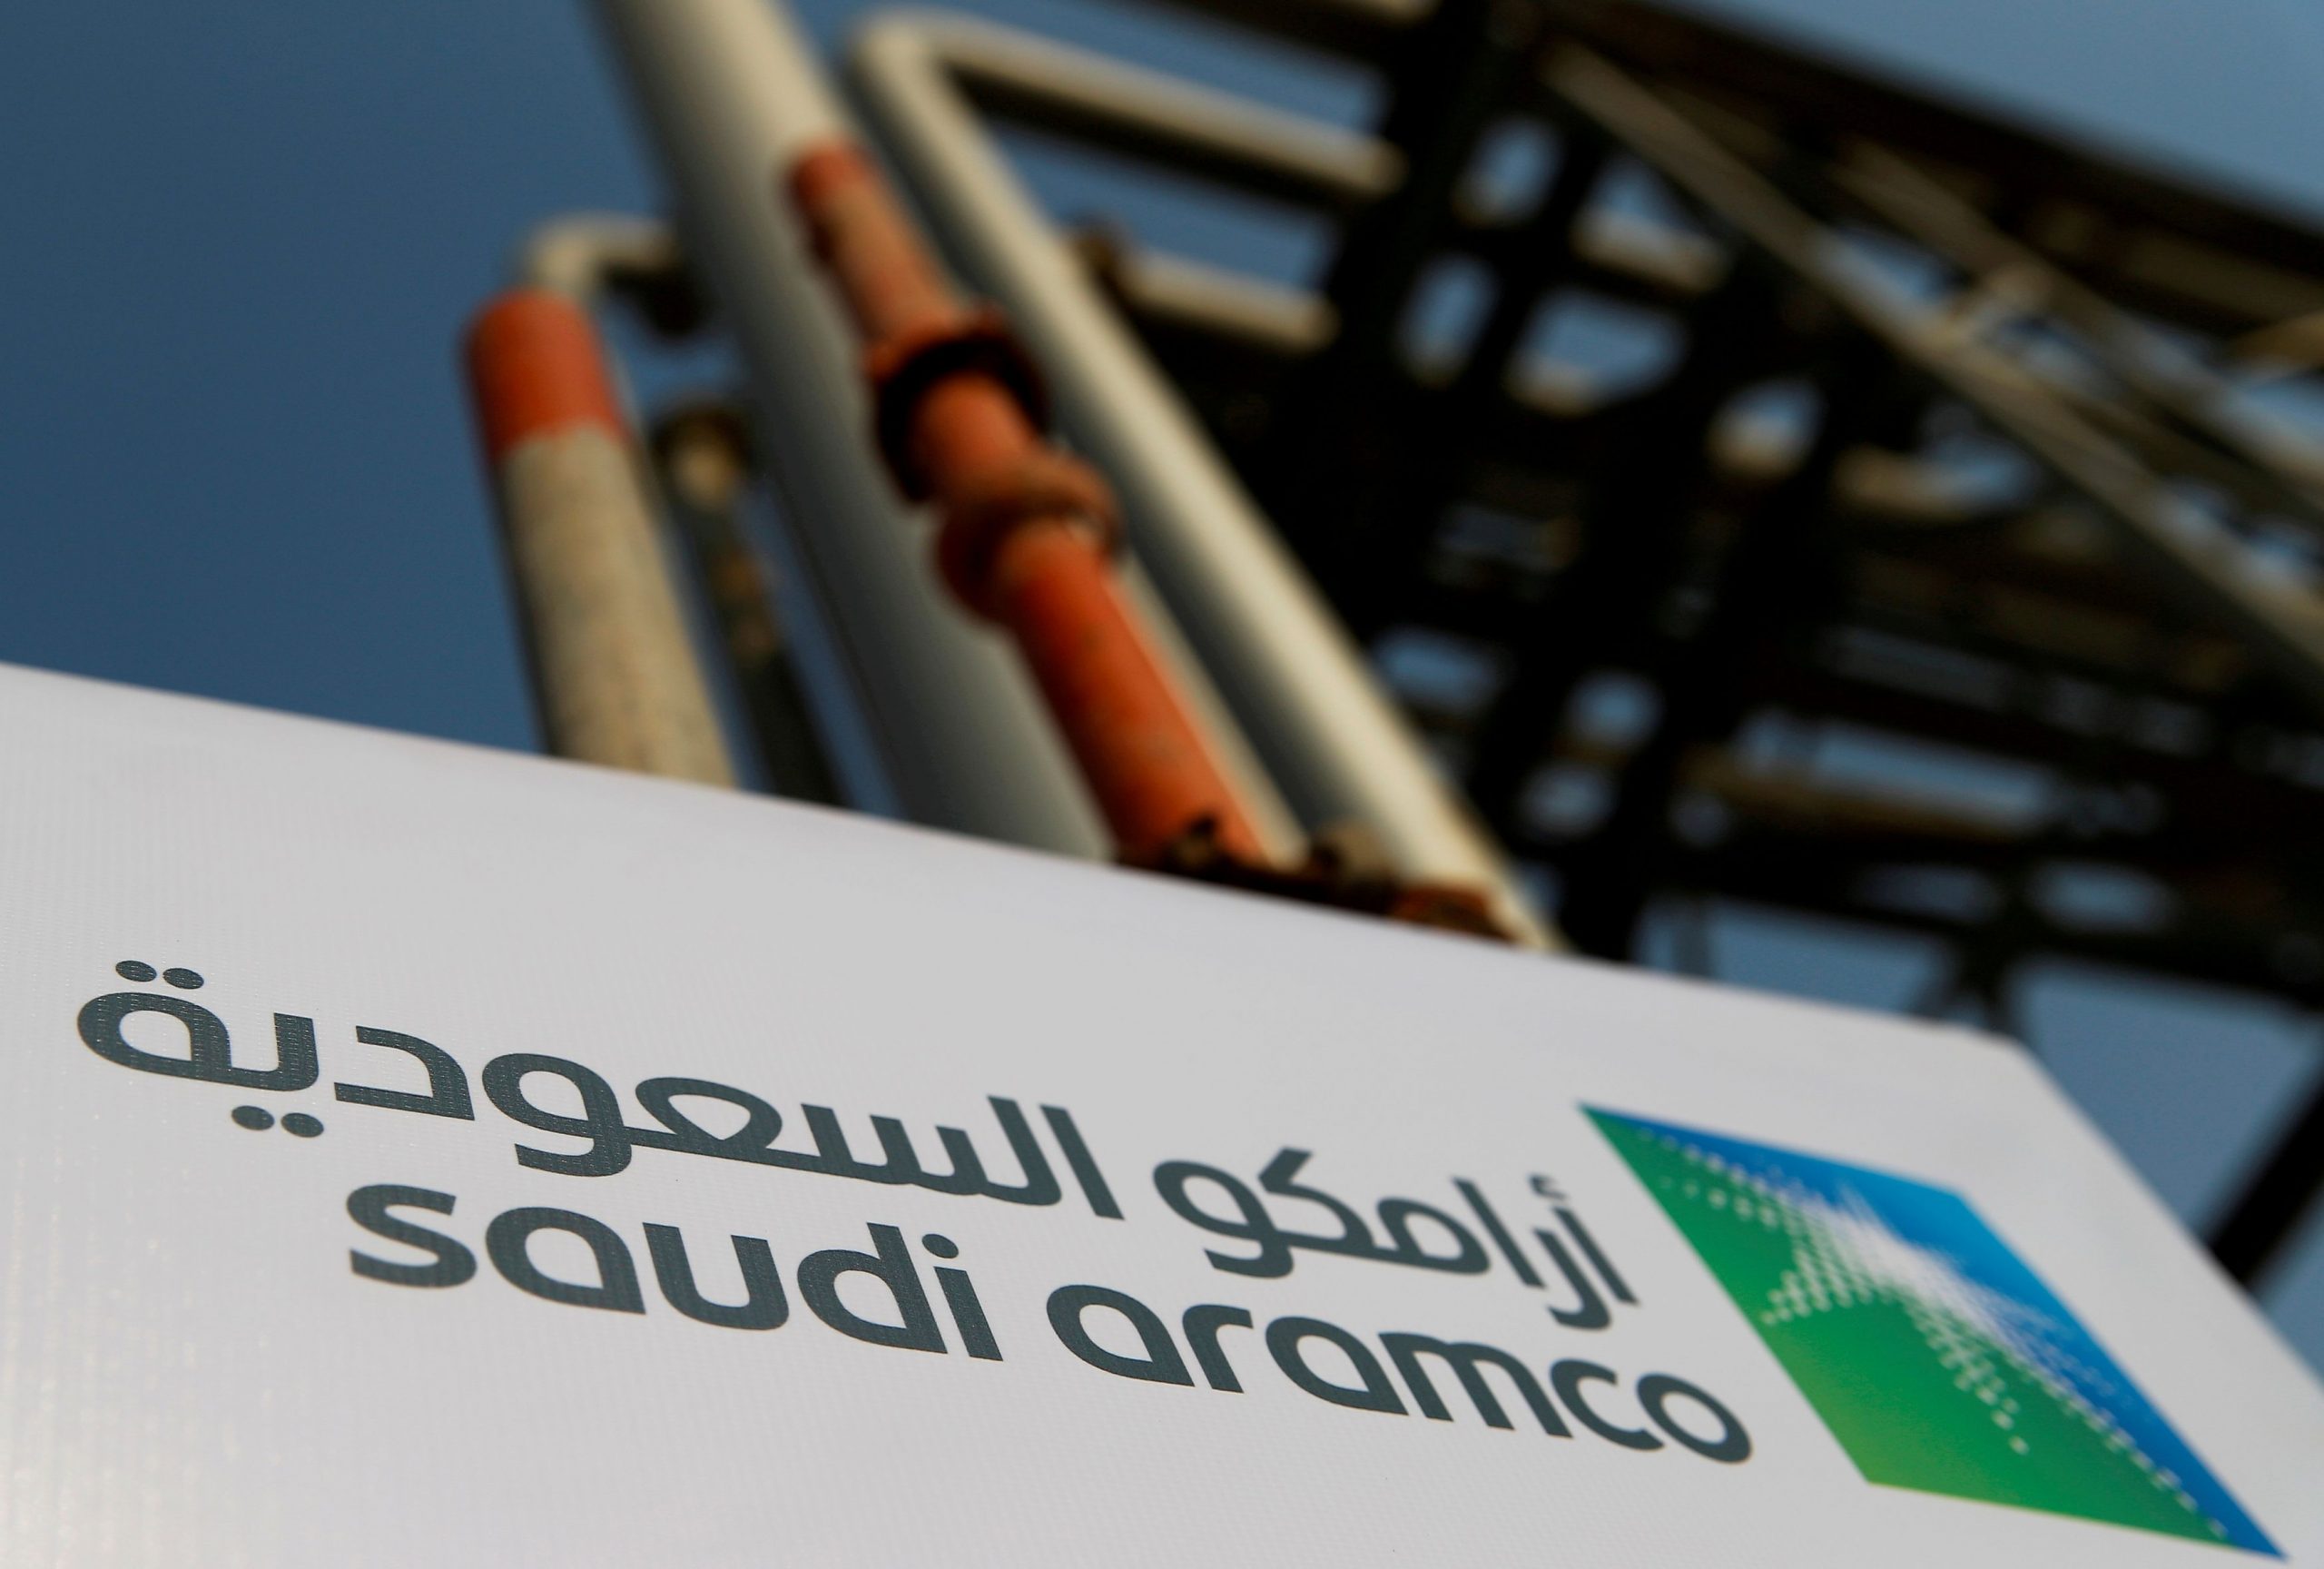 Σαουδική Αραβία: Τα μέτρα της Ευρώπης για την ενεργειακή κρίση δεν αντιμετωπίζουν το πρόβλημα, λέει ο CEO της Aramco